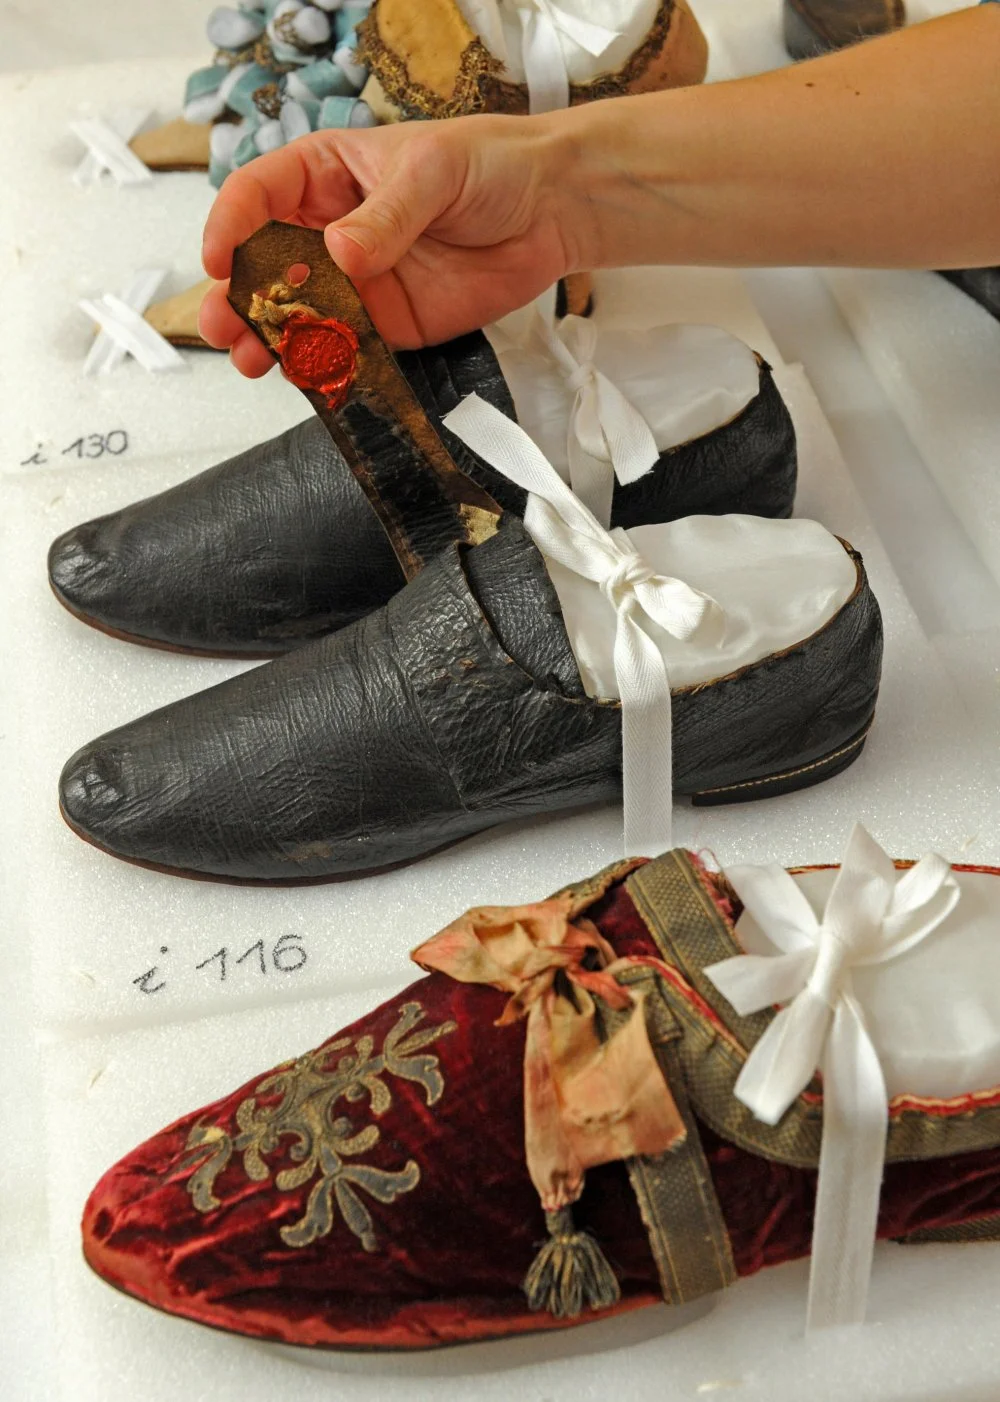 Обувь Иммануила Канта в Оружейной палате Дрезденского замка. Германия/Alamy